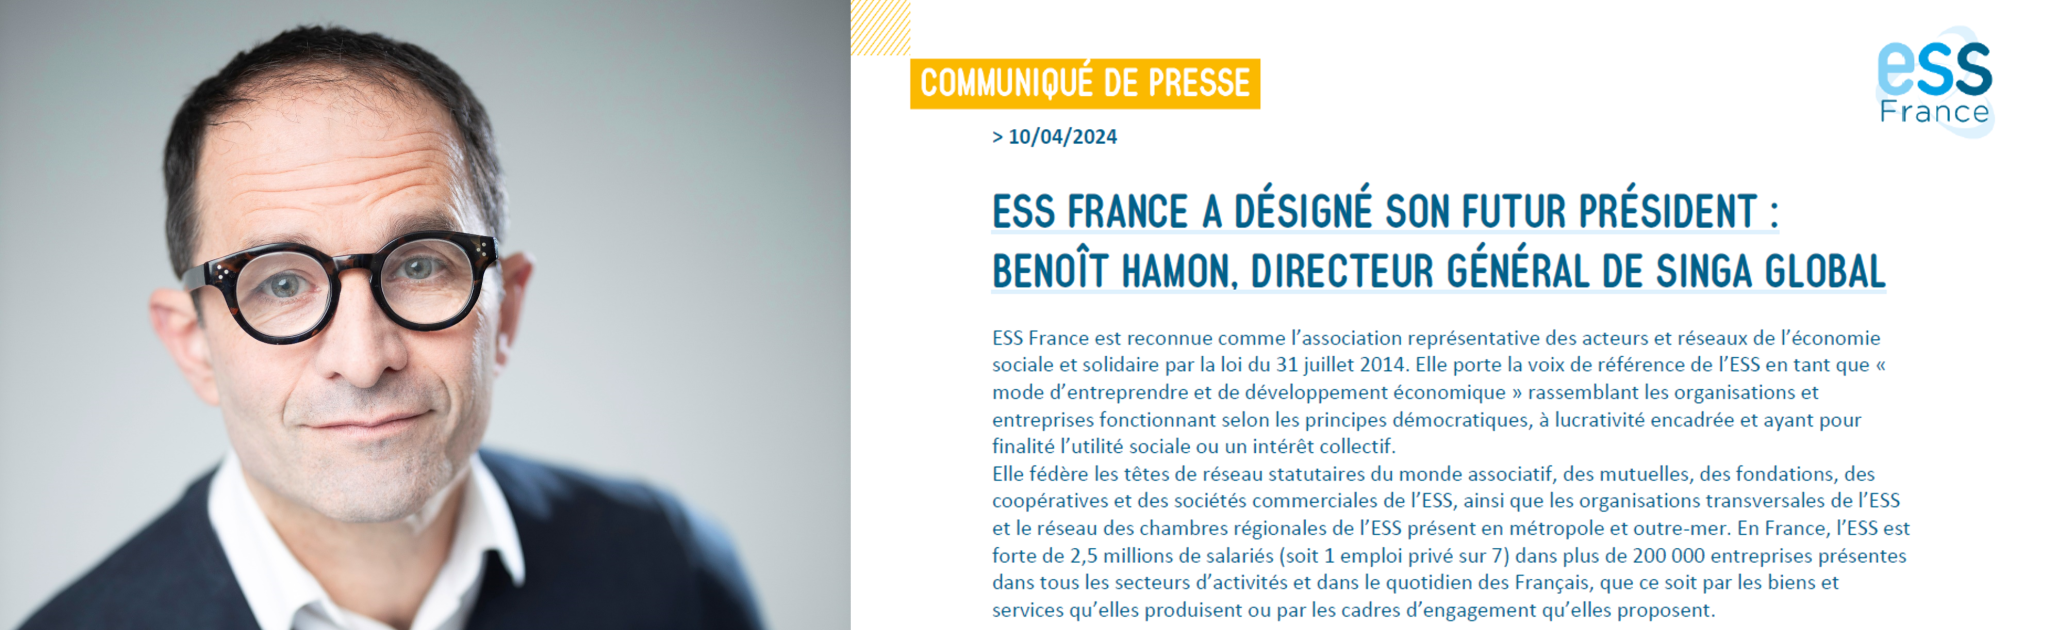 Benoît Hamon, nouveau président d'ESS France 